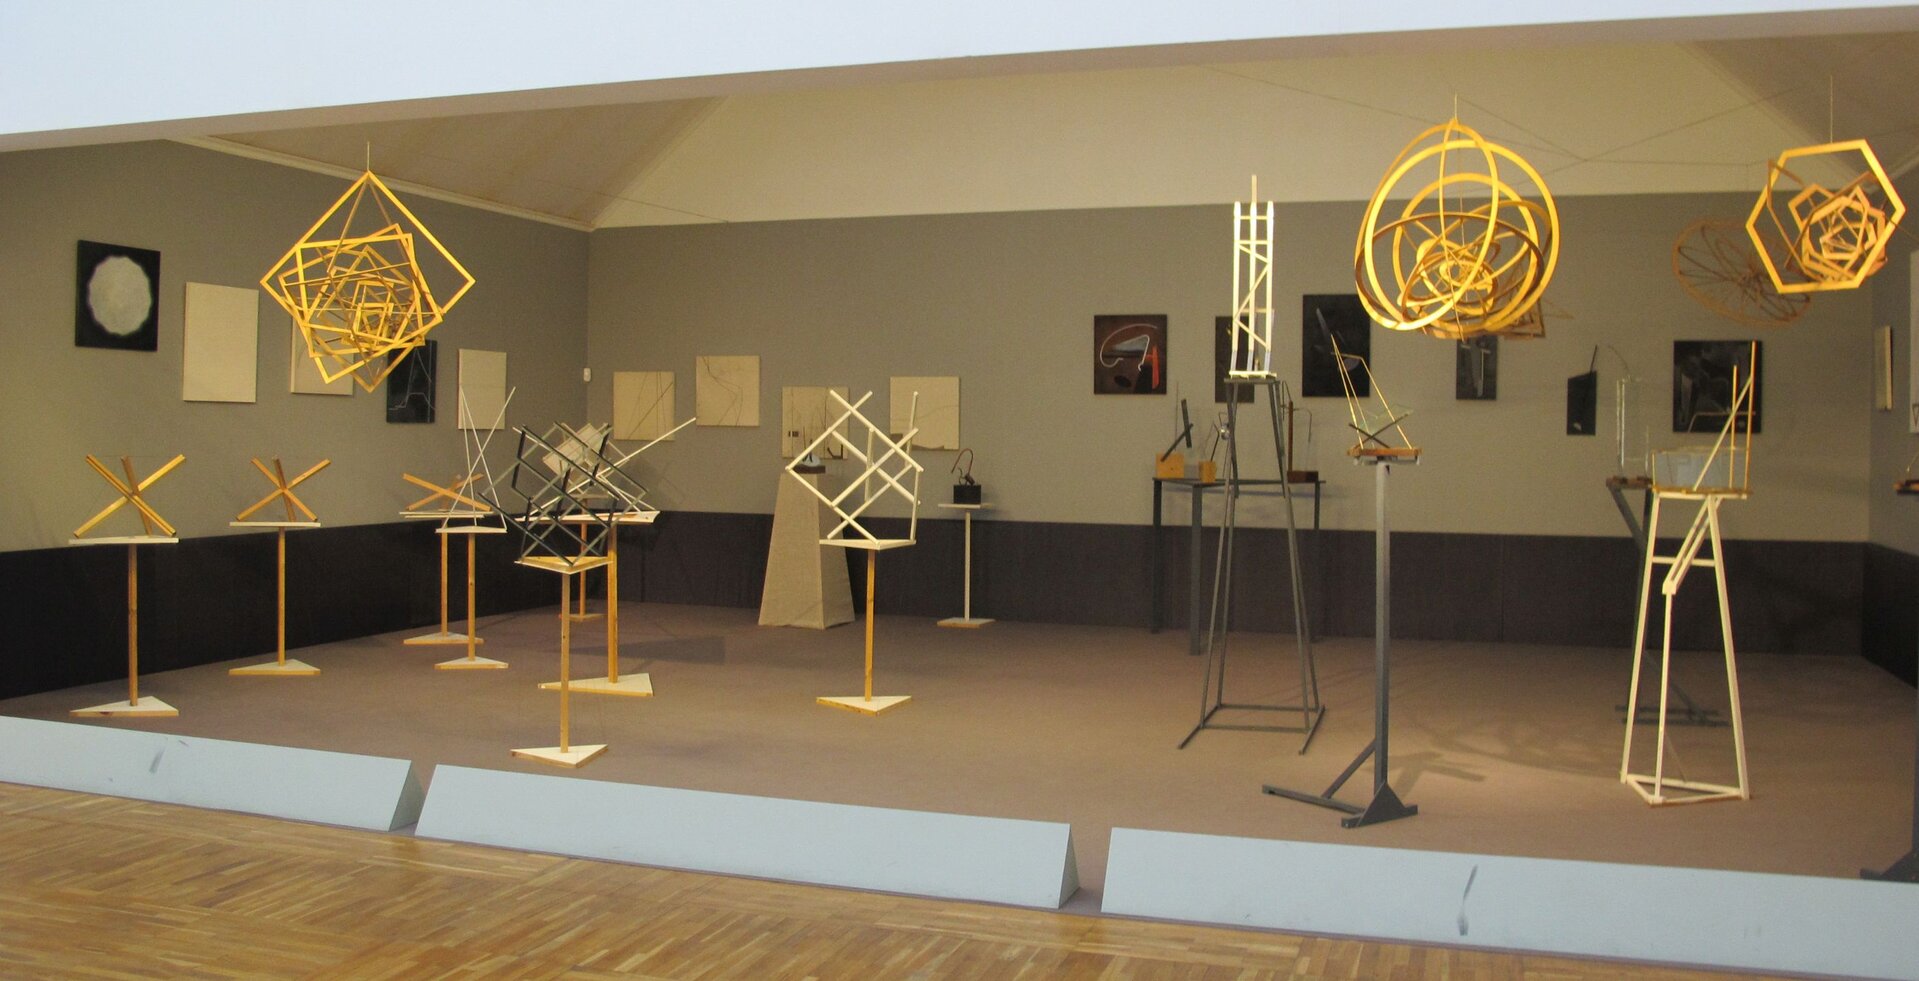 Instalacja rekonstrukcji wystawy „5x5 = 25” z 1921 r .Zdjęcie ukazuje wystawę, na podłodze umieszczone są wysokie stojaki na których umieszczono różne figury, figury zwisają także na nitkach z sufitu.